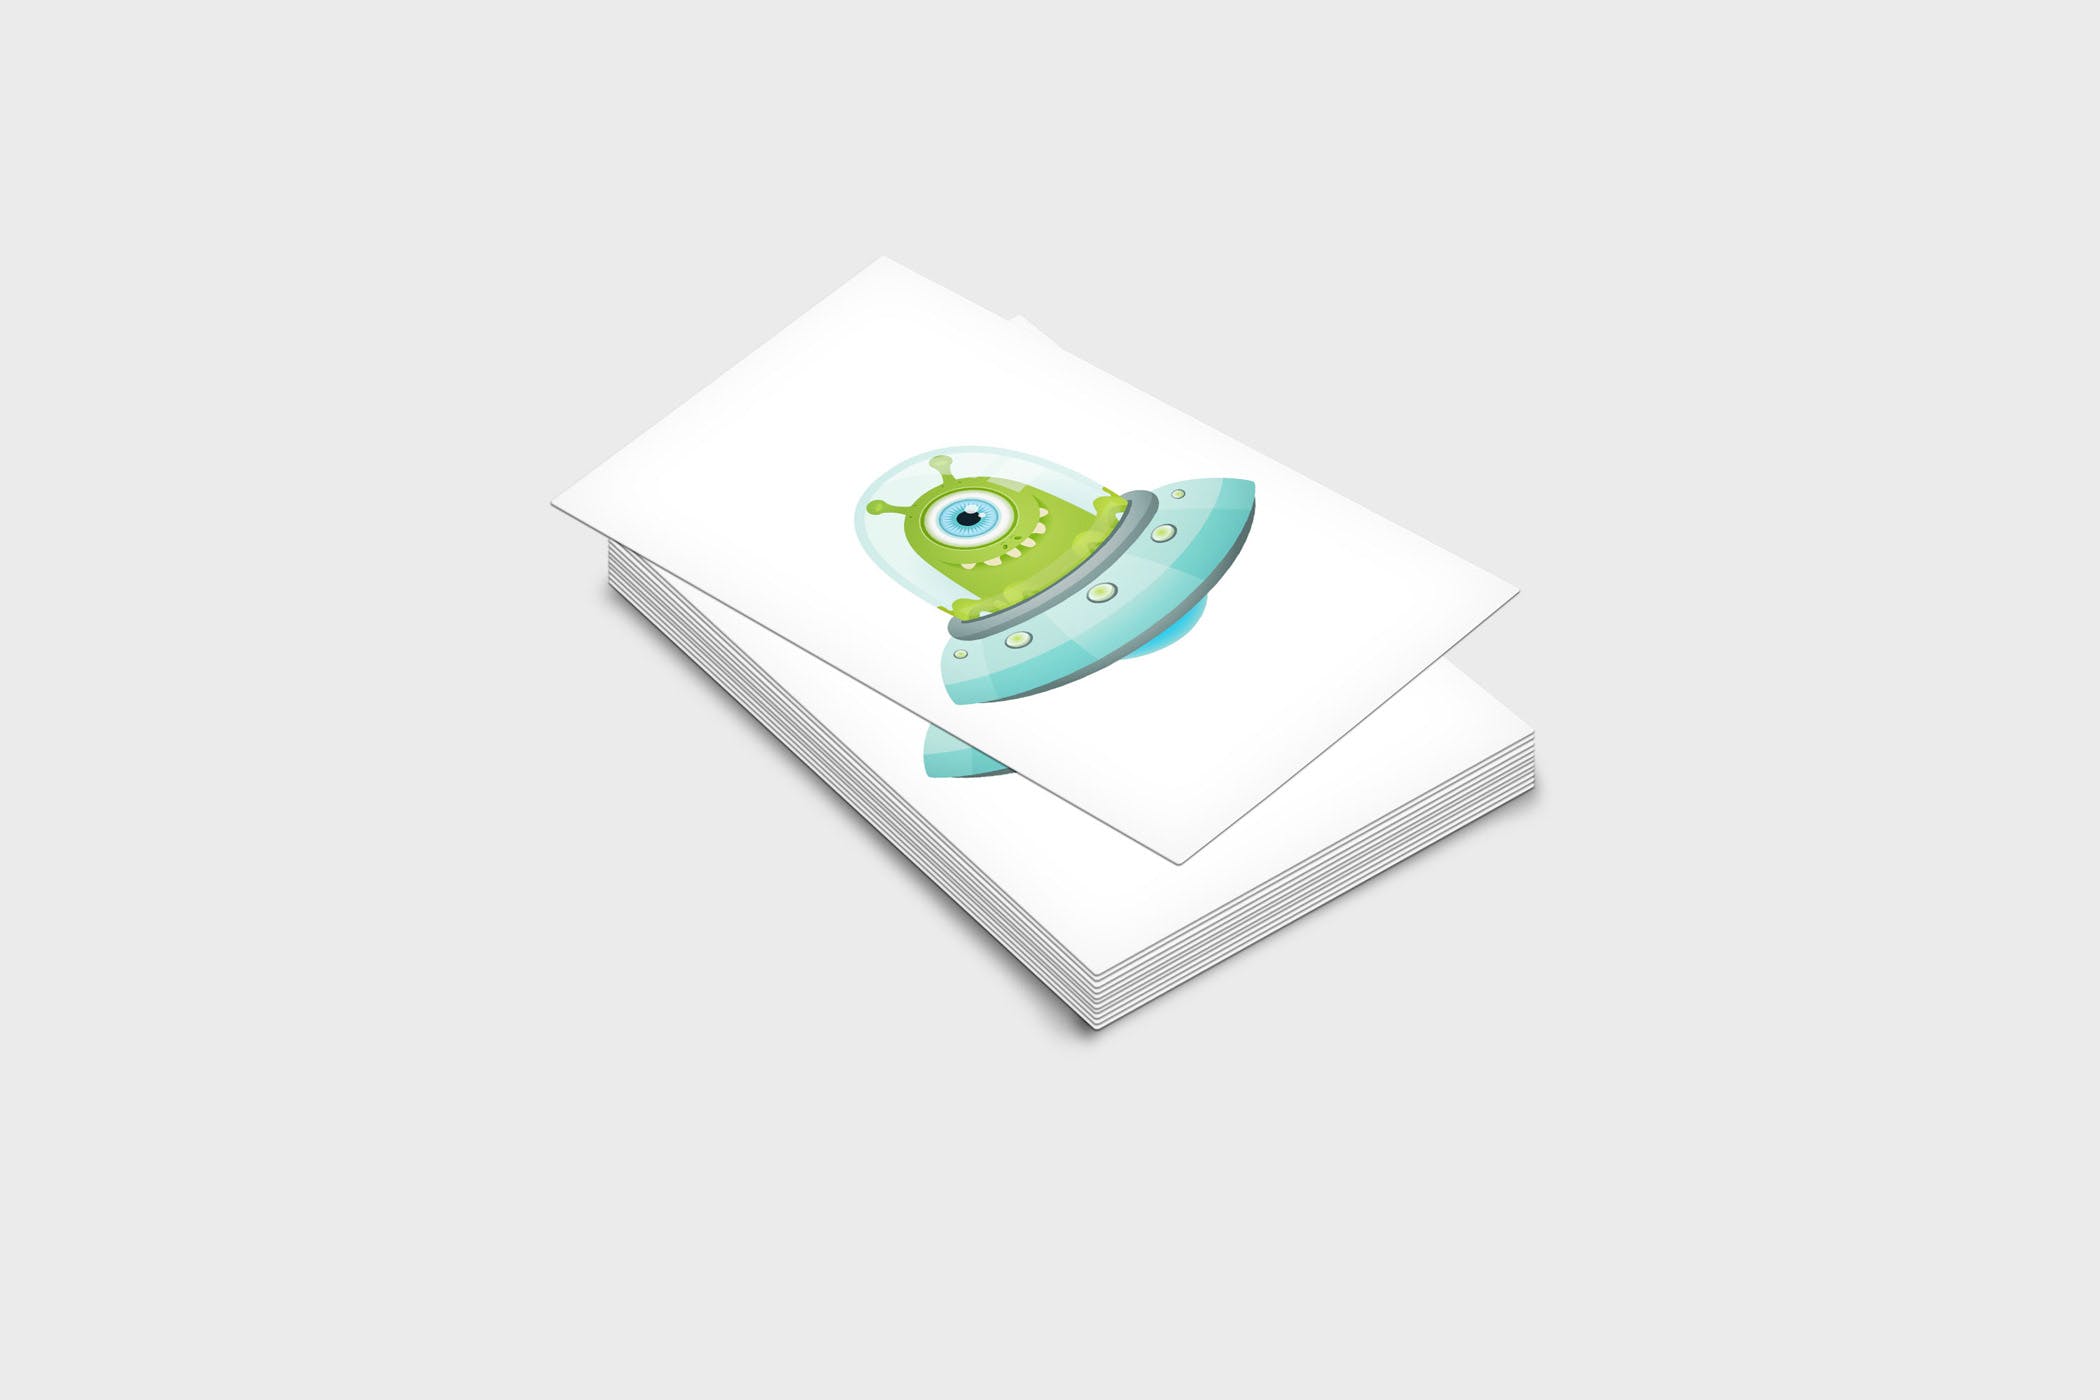 企业名片设计效果图展示样机第一素材精选模板 4 Business Card Mock-Up Template插图(1)